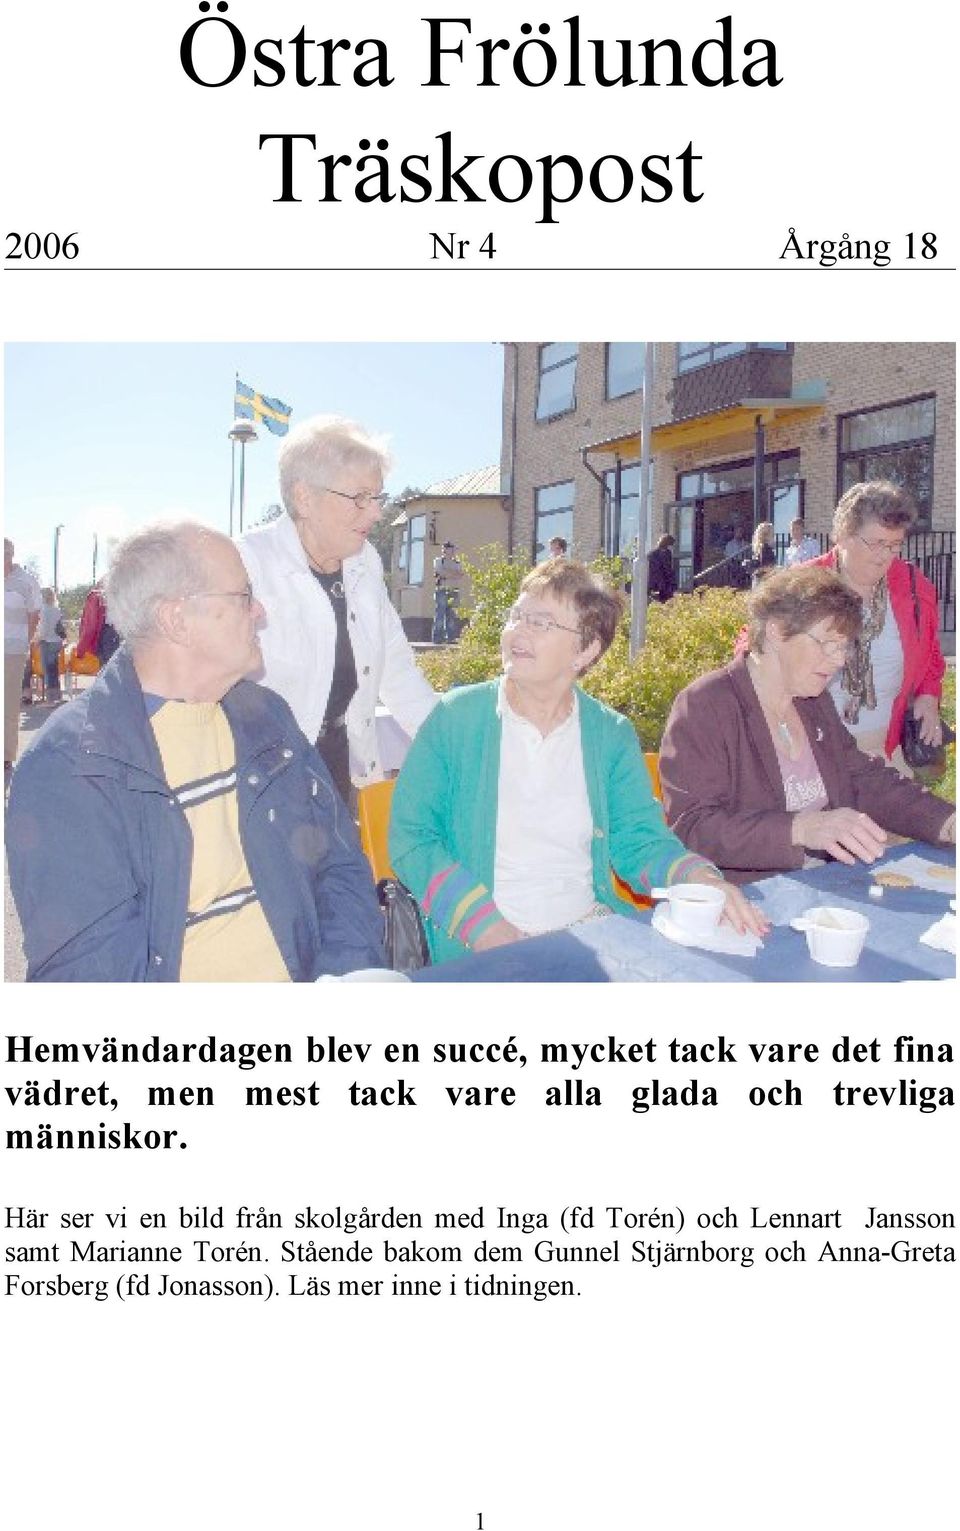 Här ser vi en bild från skolgården med Inga (fd Torén) och Lennart Jansson samt Marianne